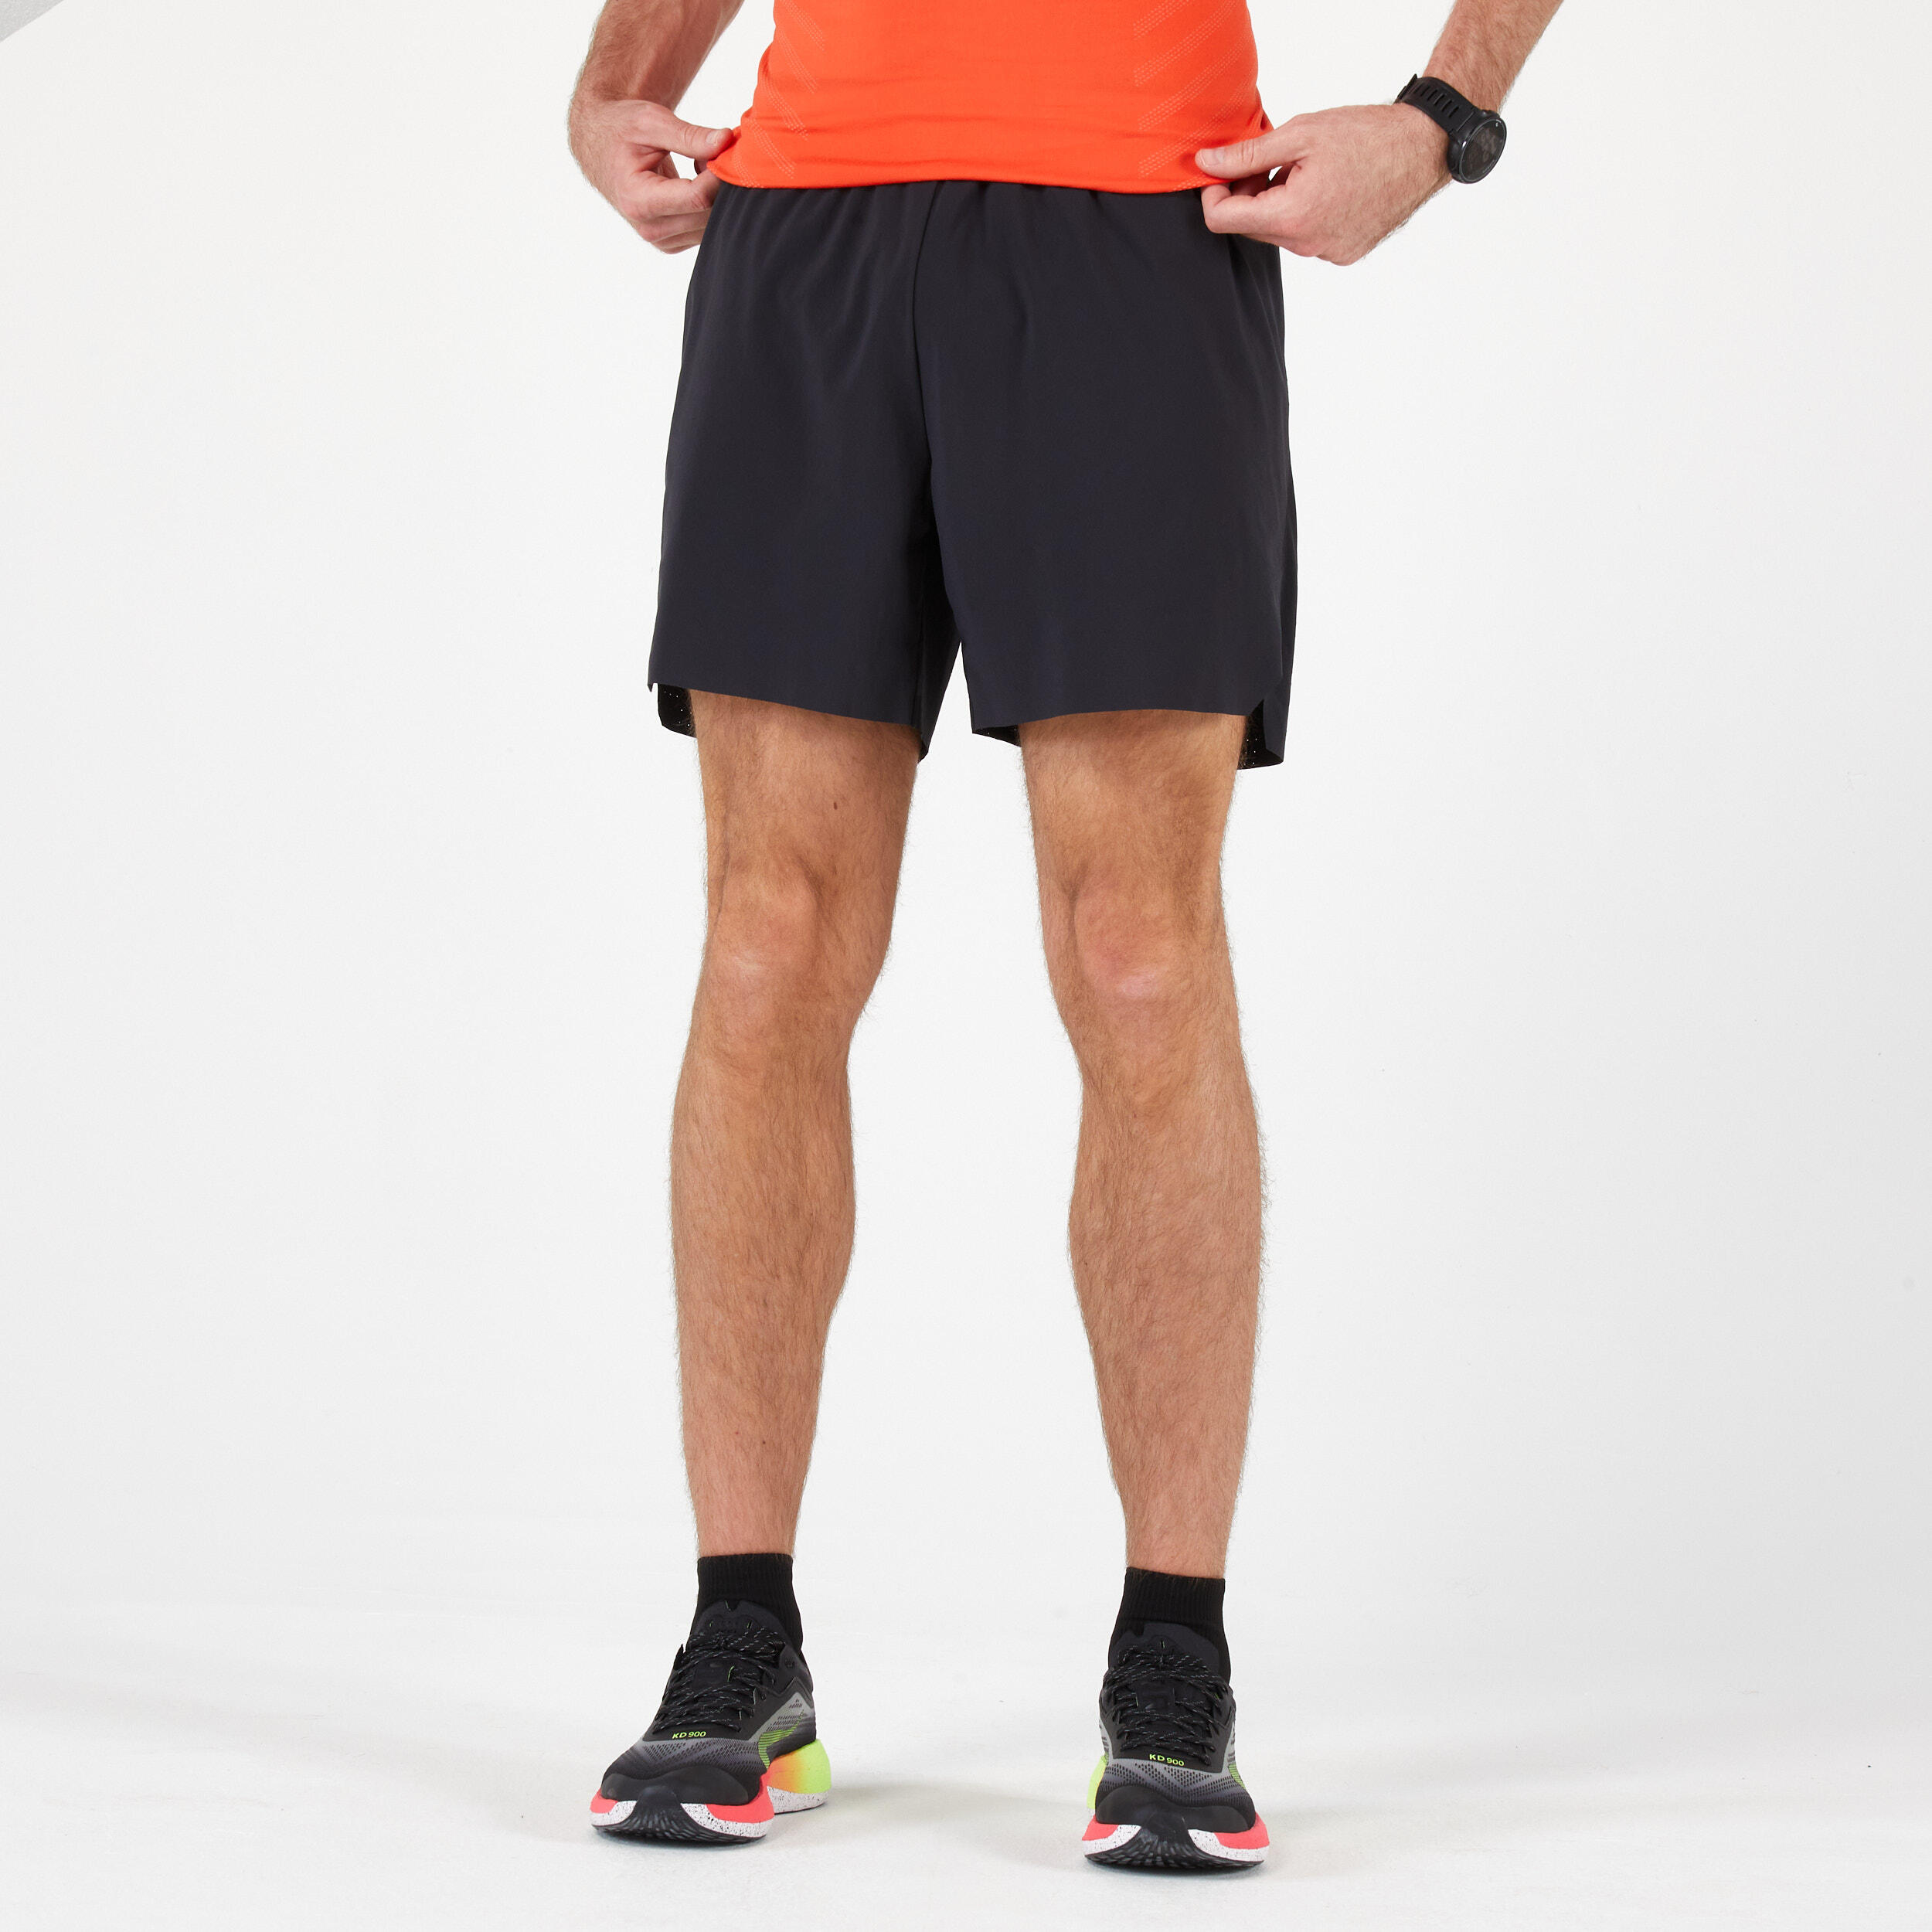 Men's Running Shorts - Dry+ Black - Black - Kiprun - Decathlon